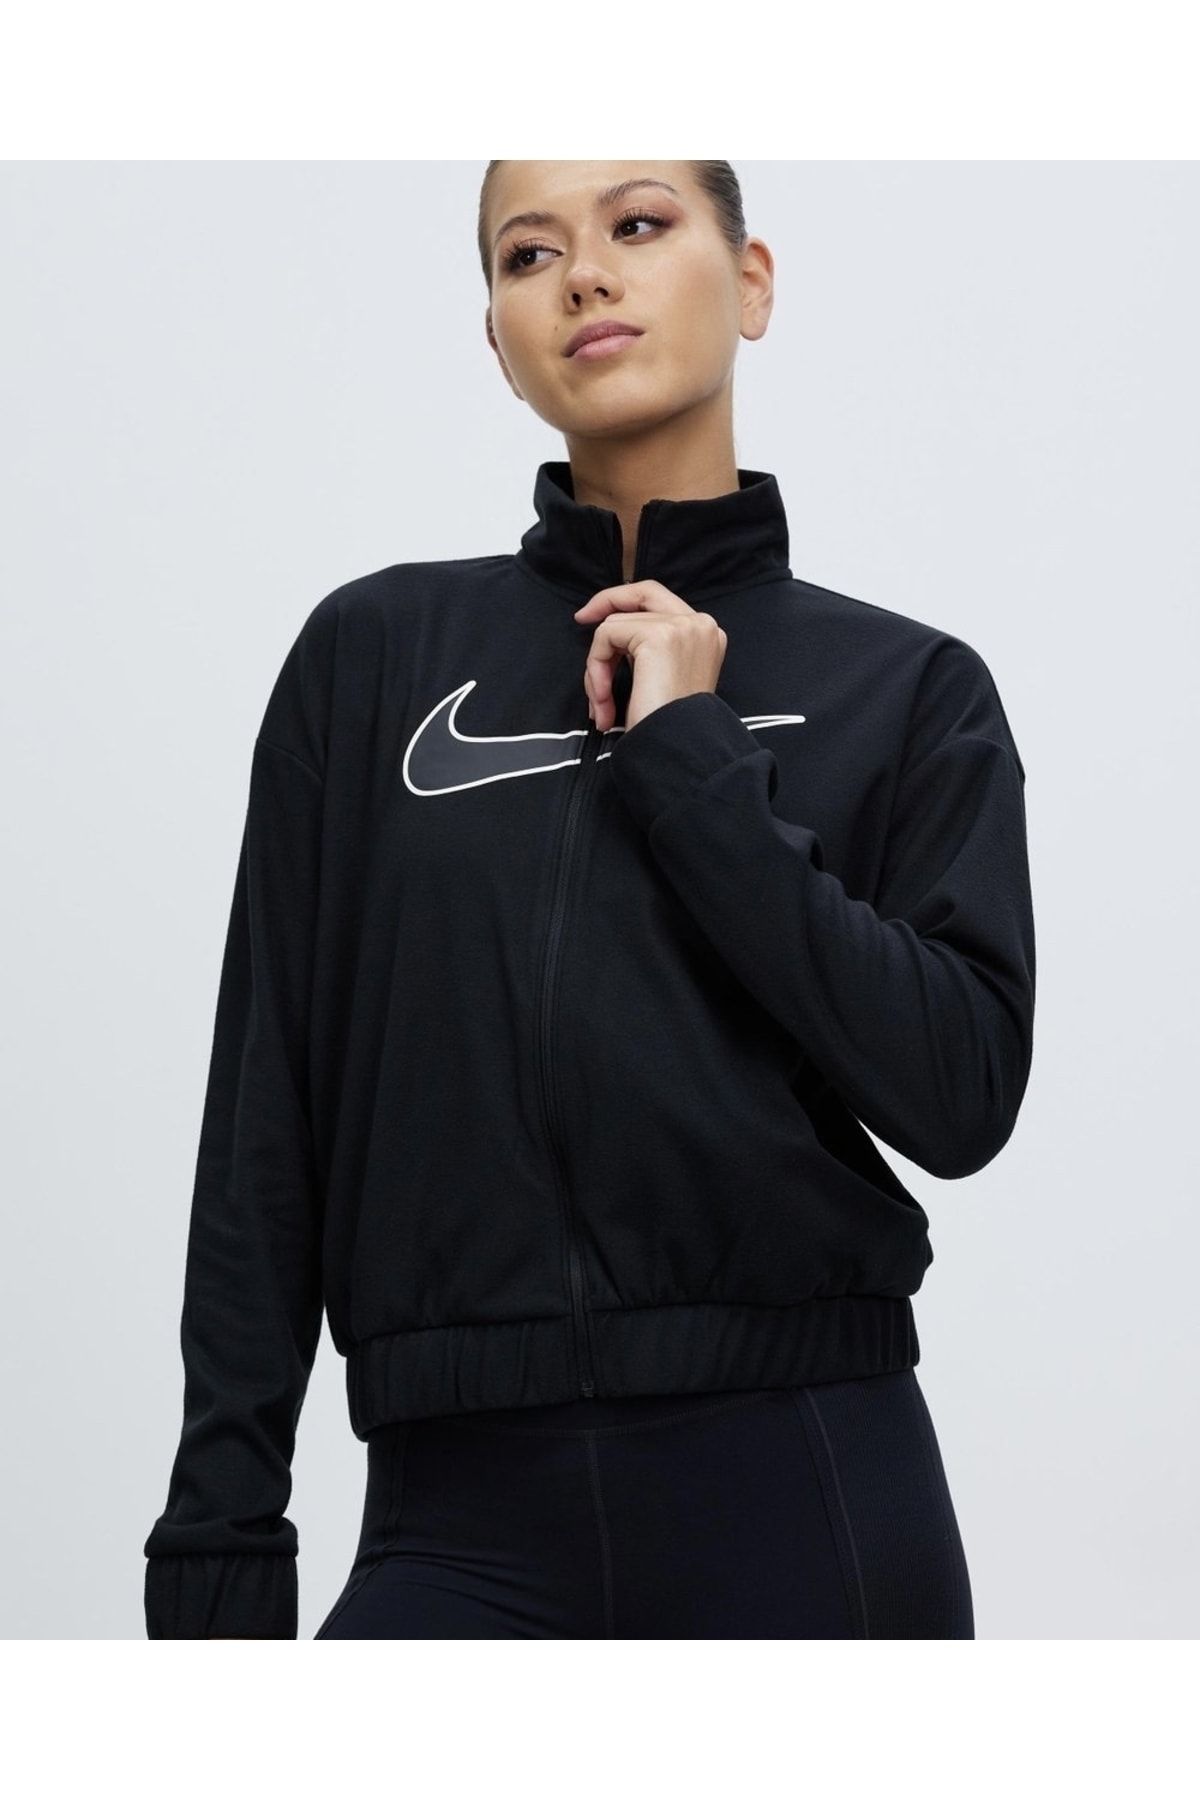 Nike Sportswear Windrunner Unisex Jacket Women's Zippered Sports Jacket  Windbreaker White - Trendyol